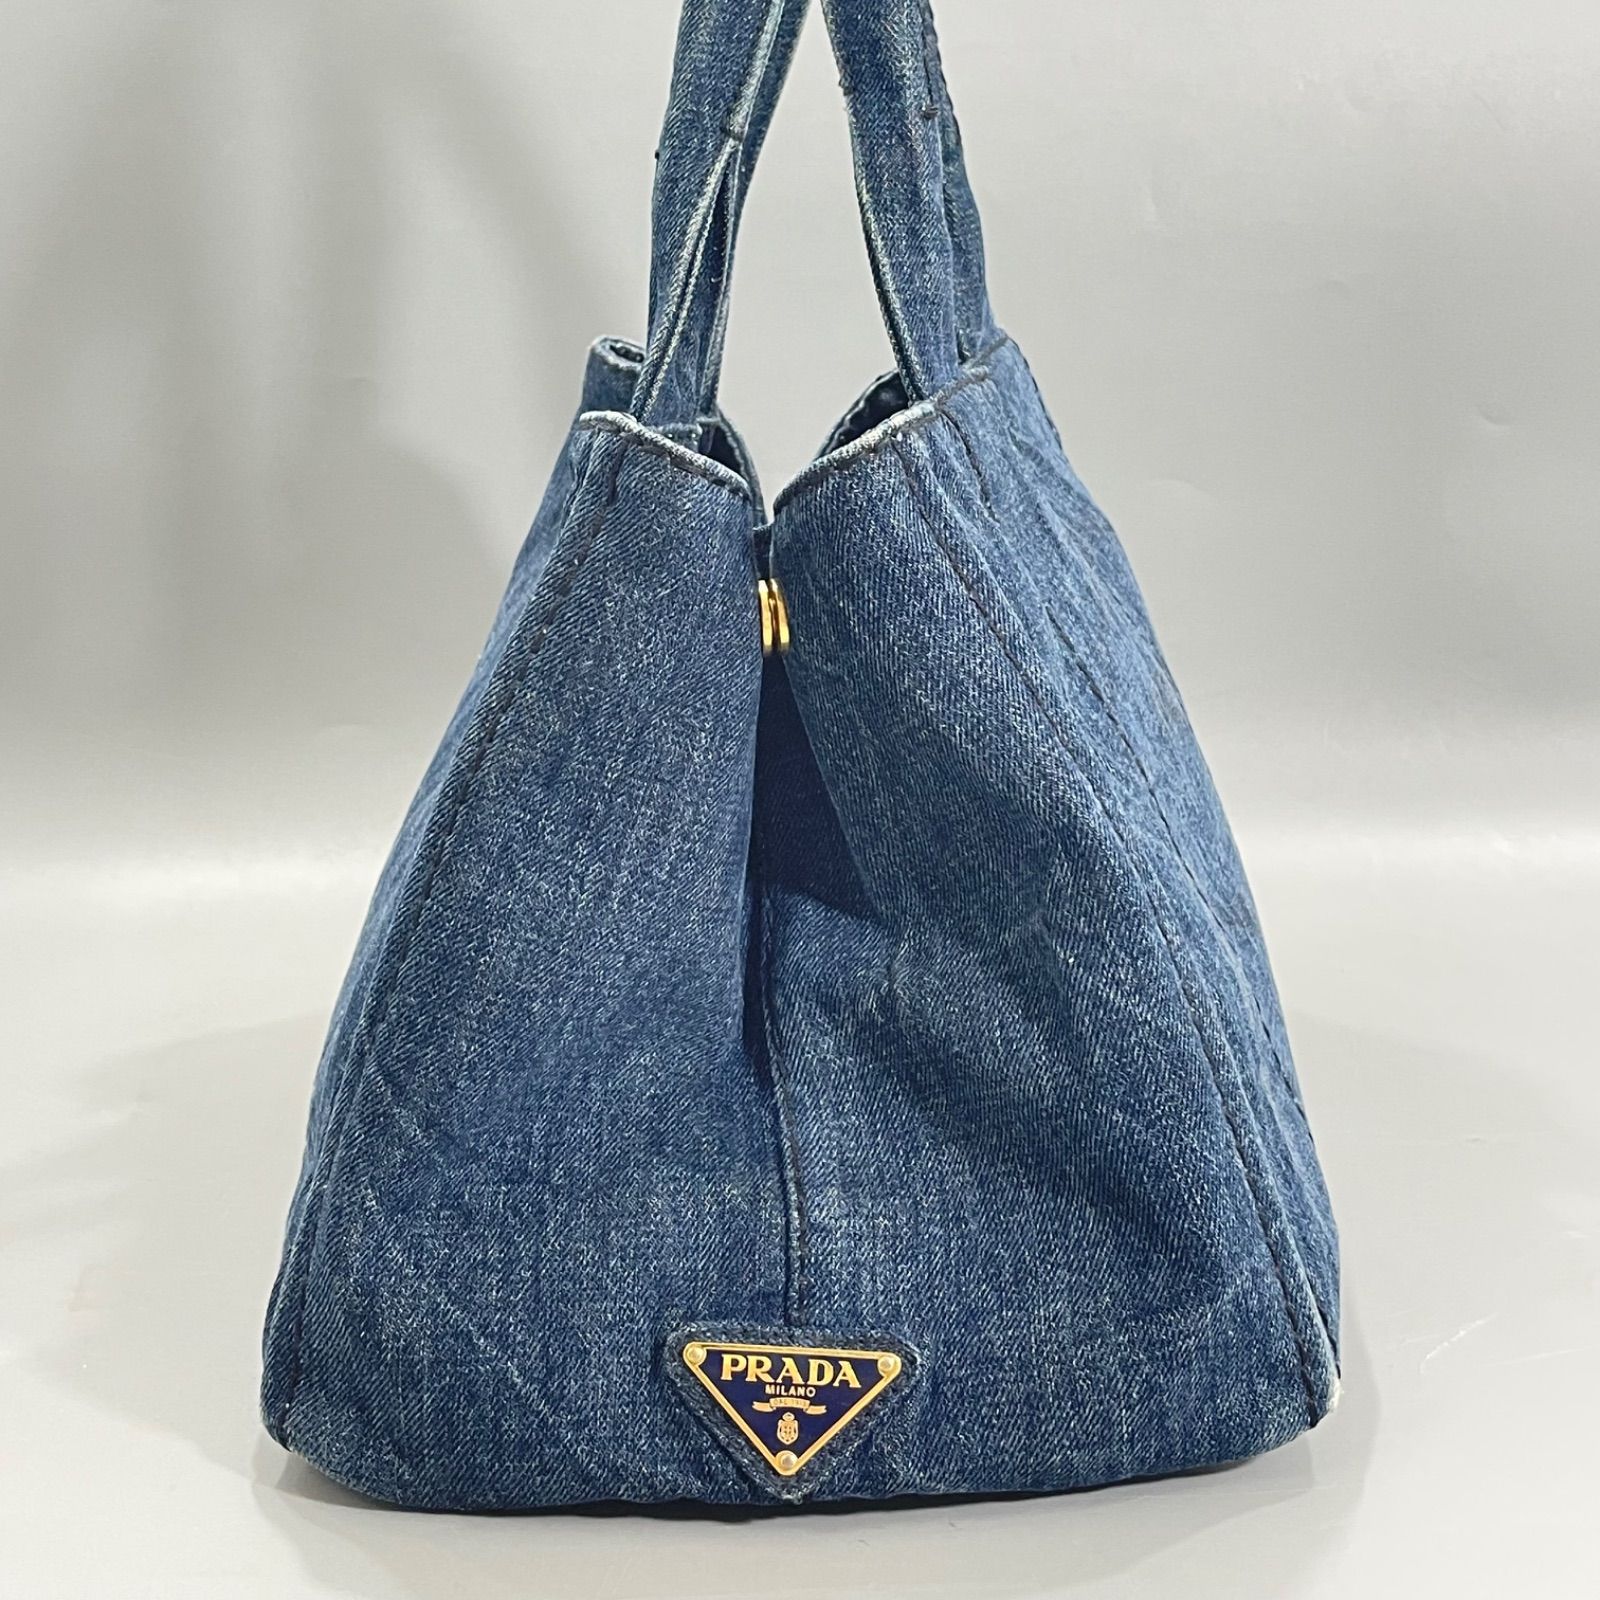 本物保証 美品 PRADA プラダ カナパ デニム トートバッグ 三角プレート Mサイズ 保存袋付 鞄 メ135